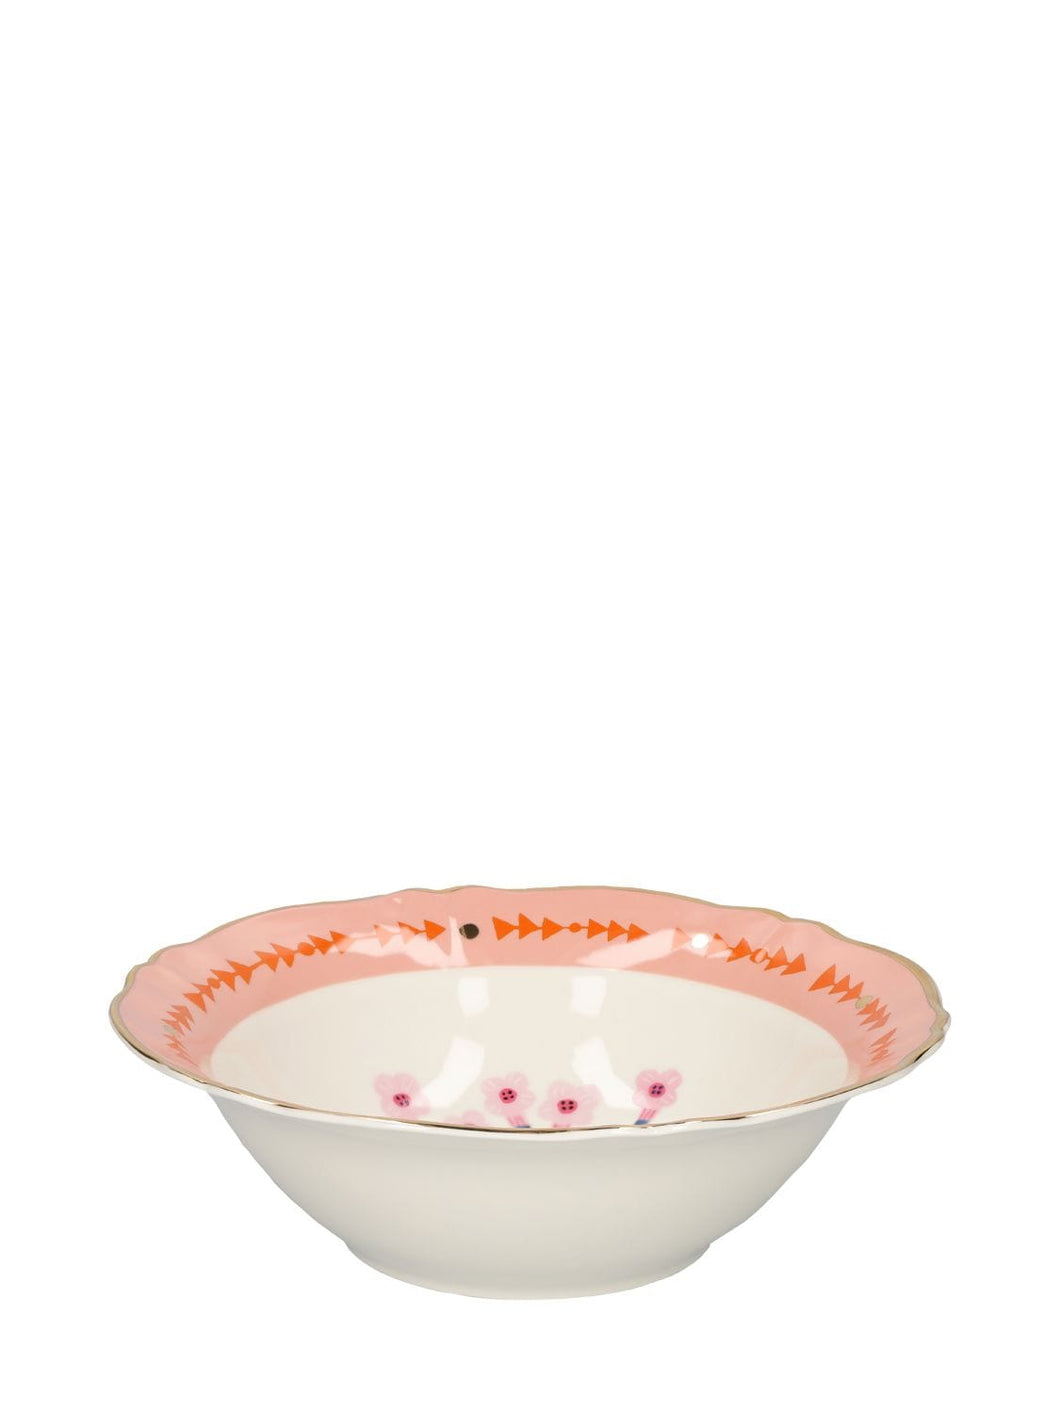 Bitossi Home Salad Serving Bowl Porcelain